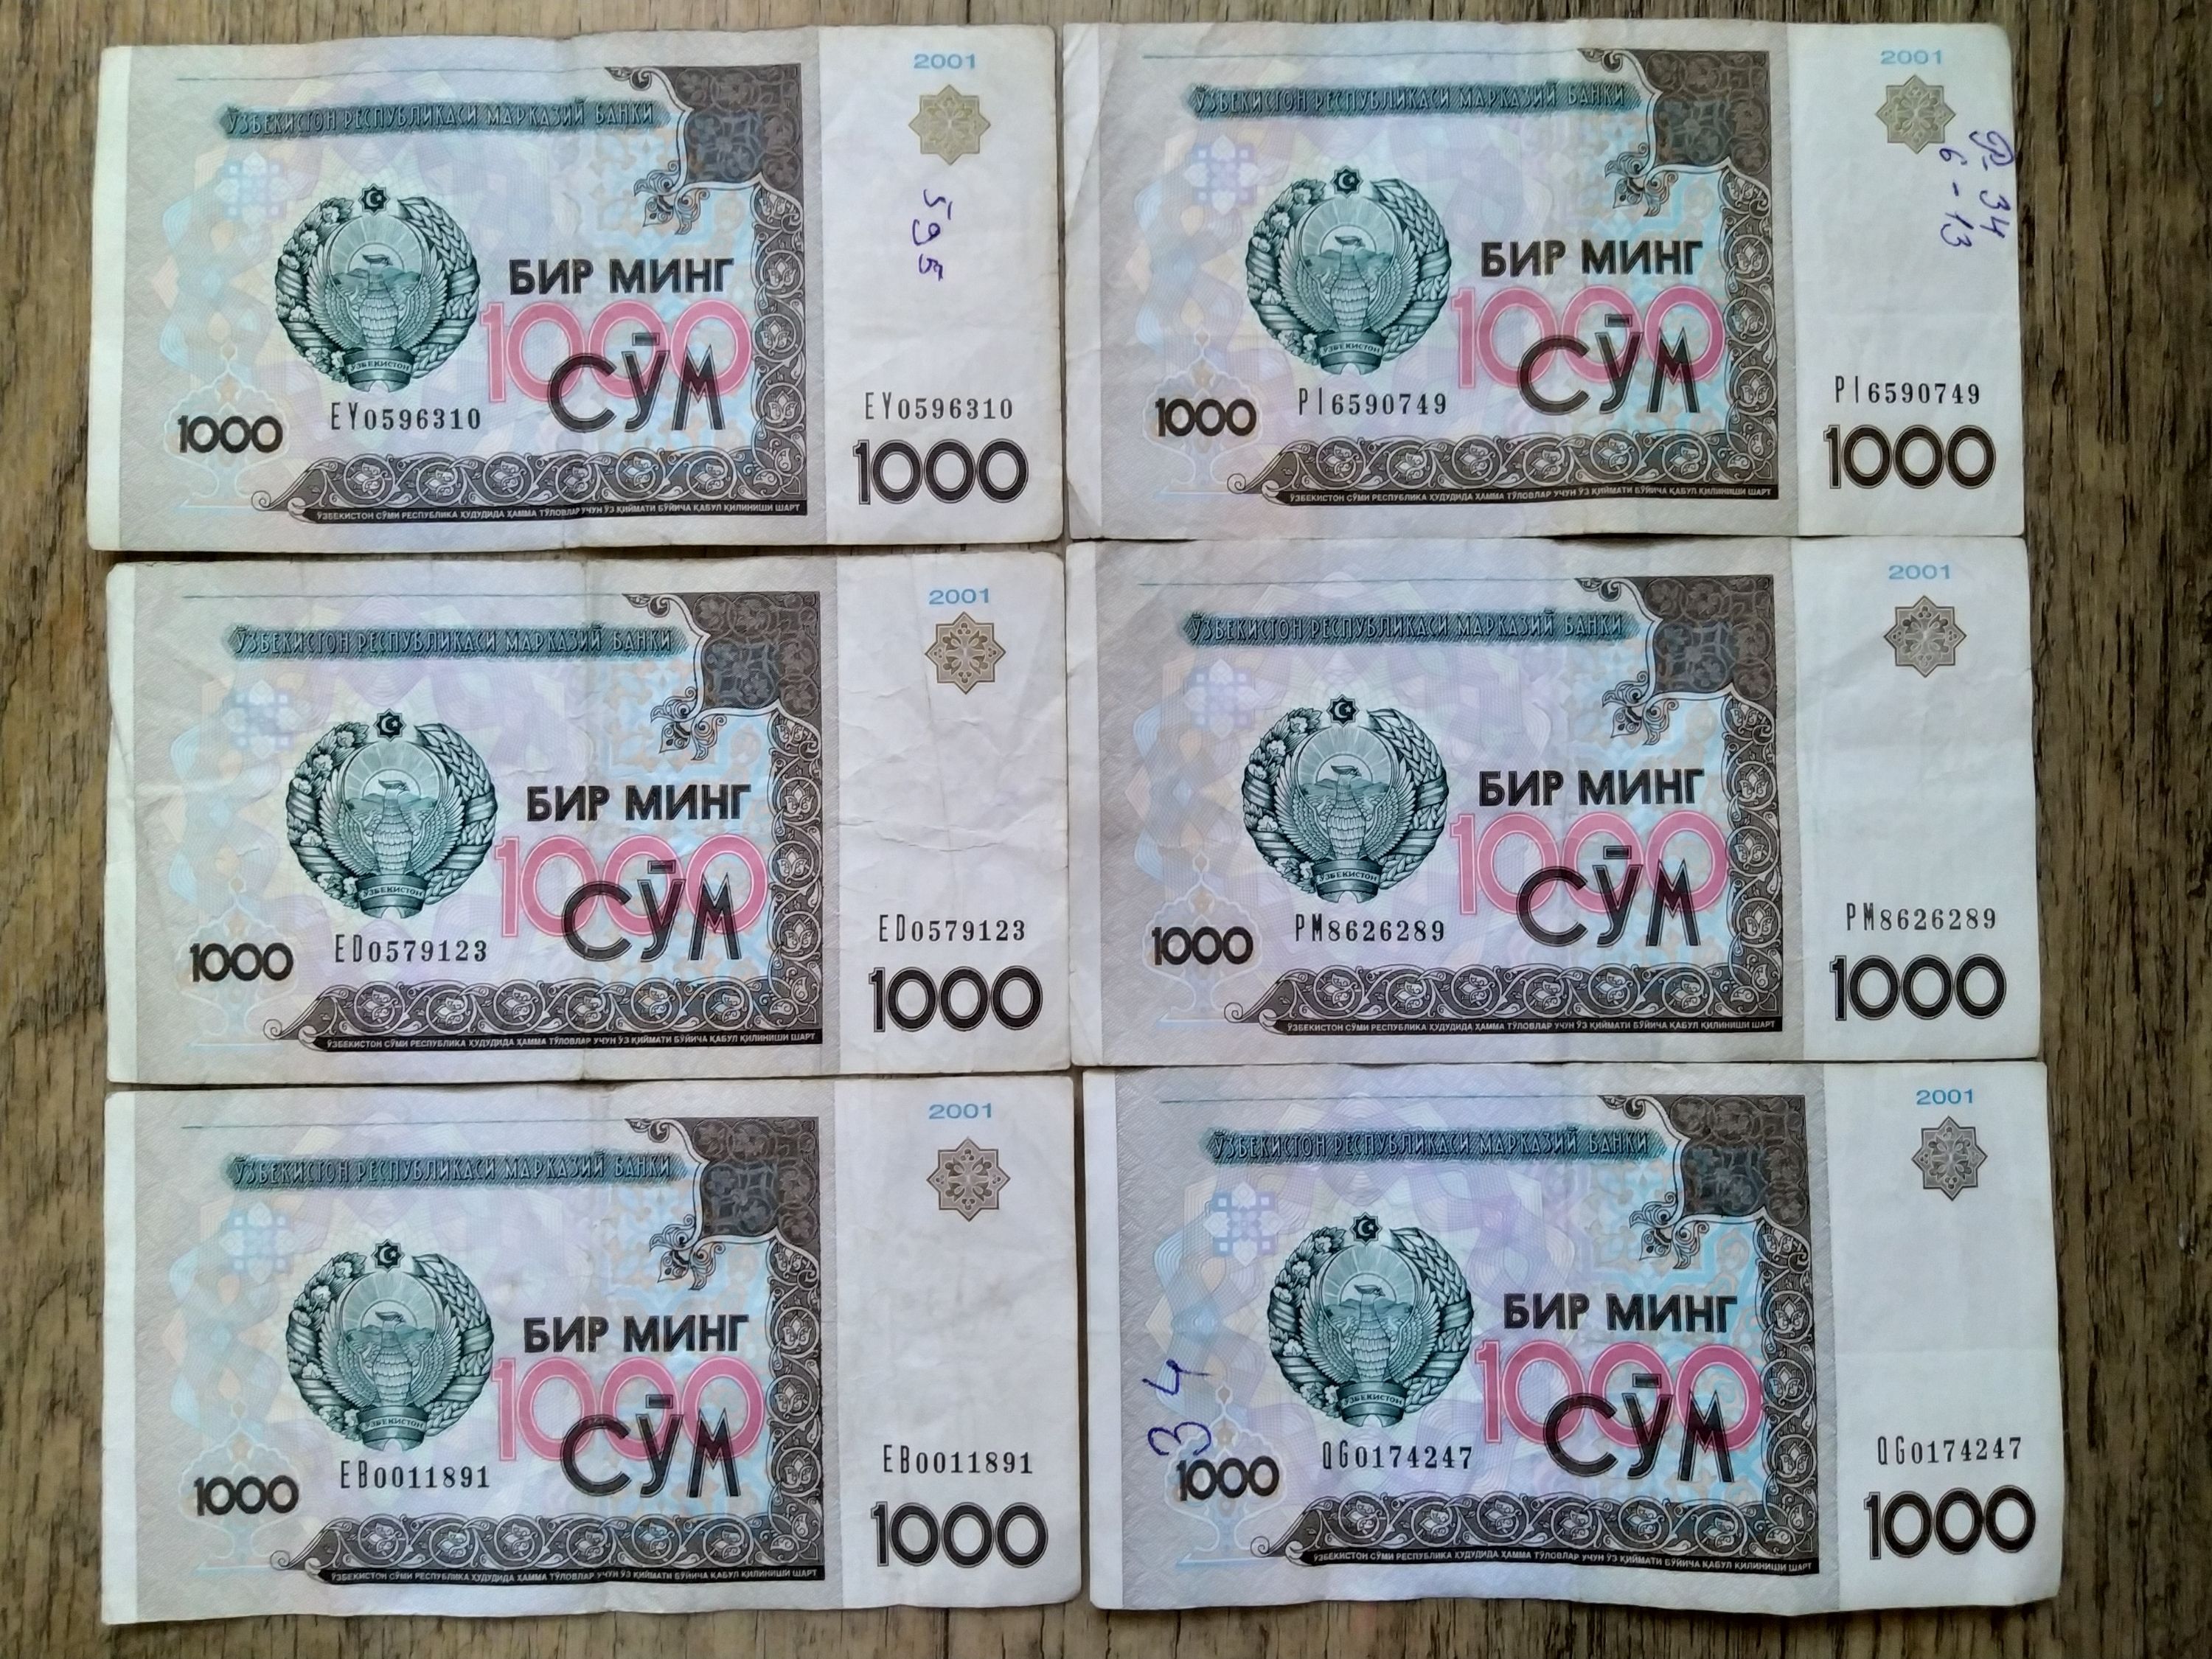 300 рублей в сумах. 1000 Сум. Купюры Узбекистана. Банкноты Узбекистан 1998. Узбекистан купюру покажи.